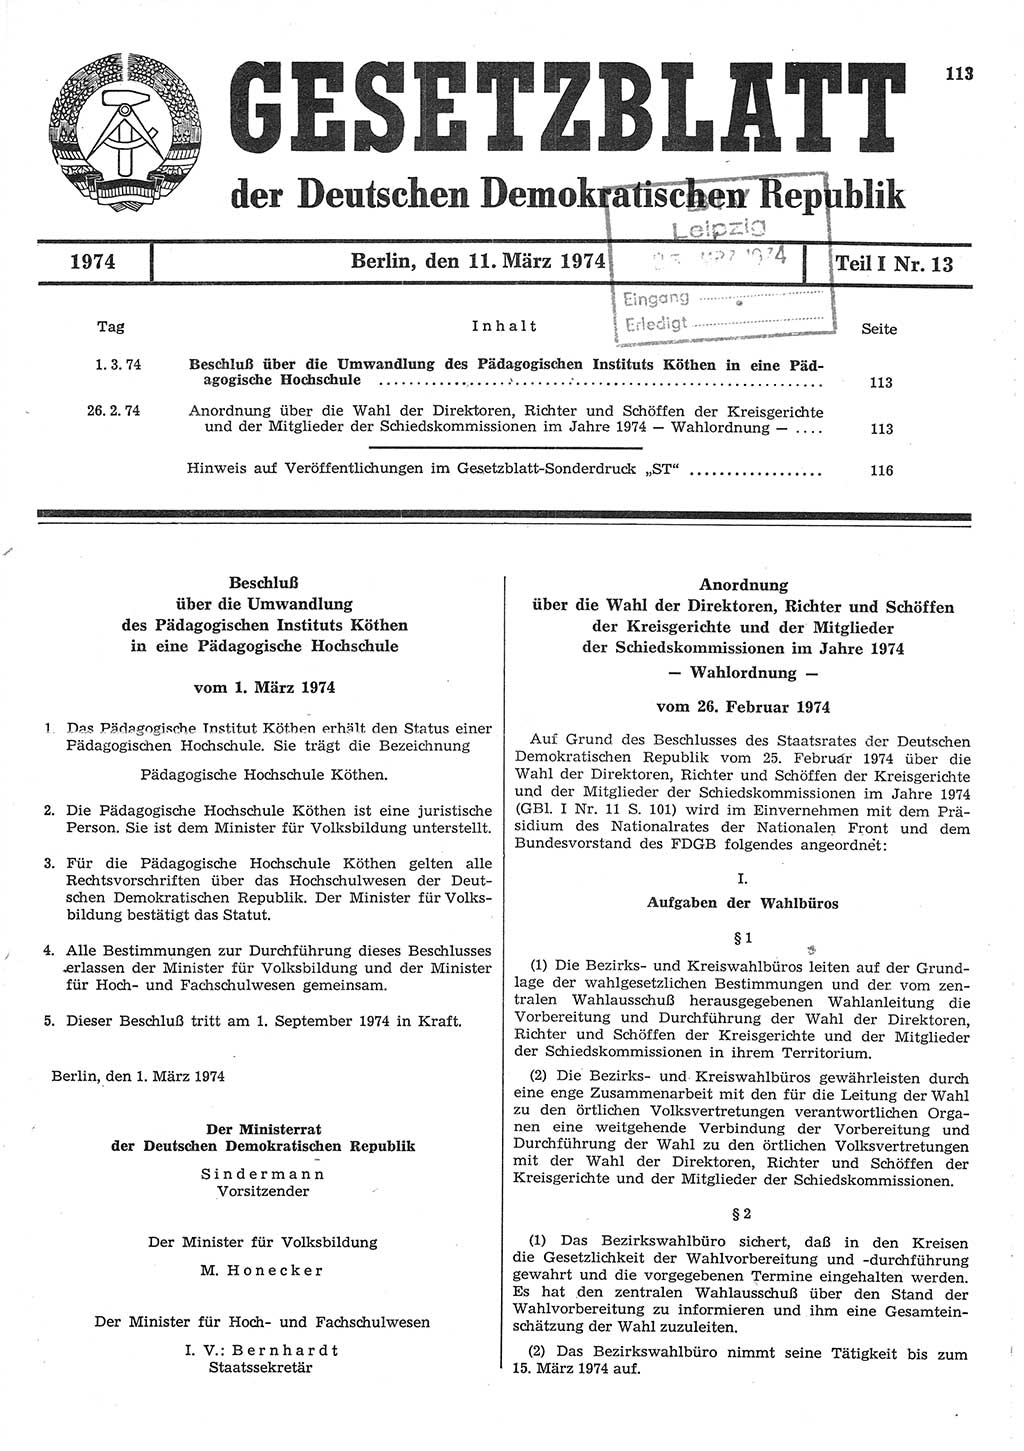 Gesetzblatt (GBl.) der Deutschen Demokratischen Republik (DDR) Teil Ⅰ 1974, Seite 113 (GBl. DDR Ⅰ 1974, S. 113)